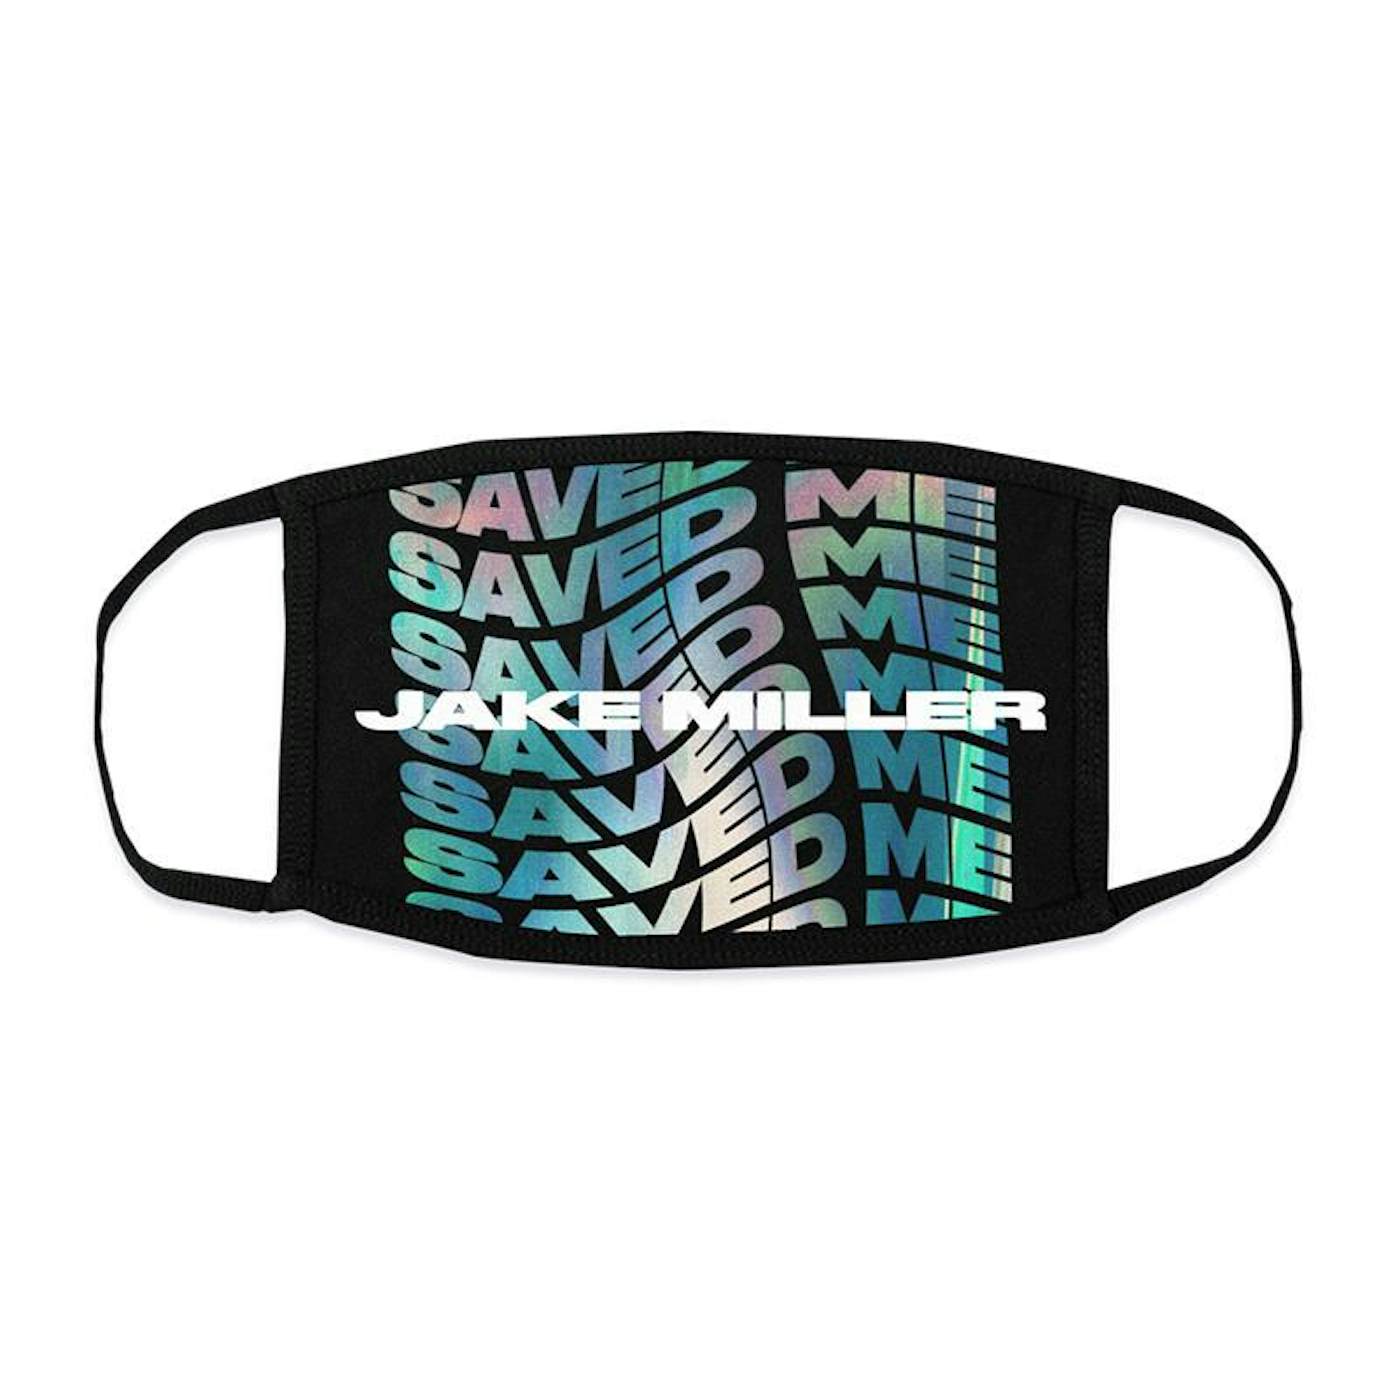 Jake Miller SAVED ME Face Mask + Digital Single Download